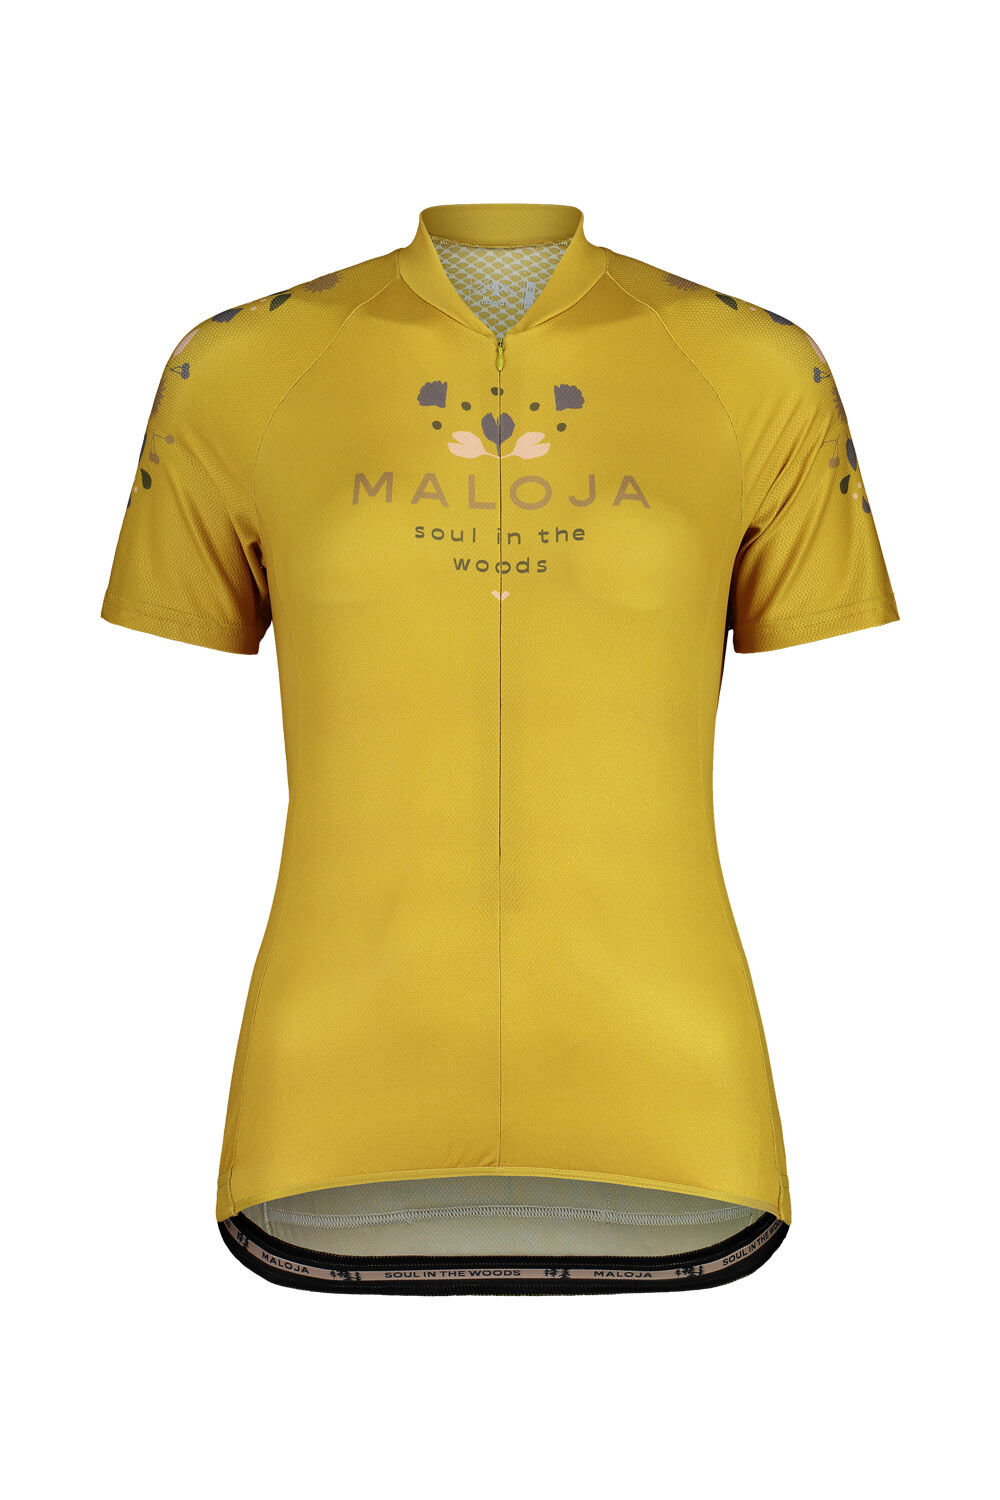 Maloja RubinieM. 1/2 - Maglia ciclismo - Donna